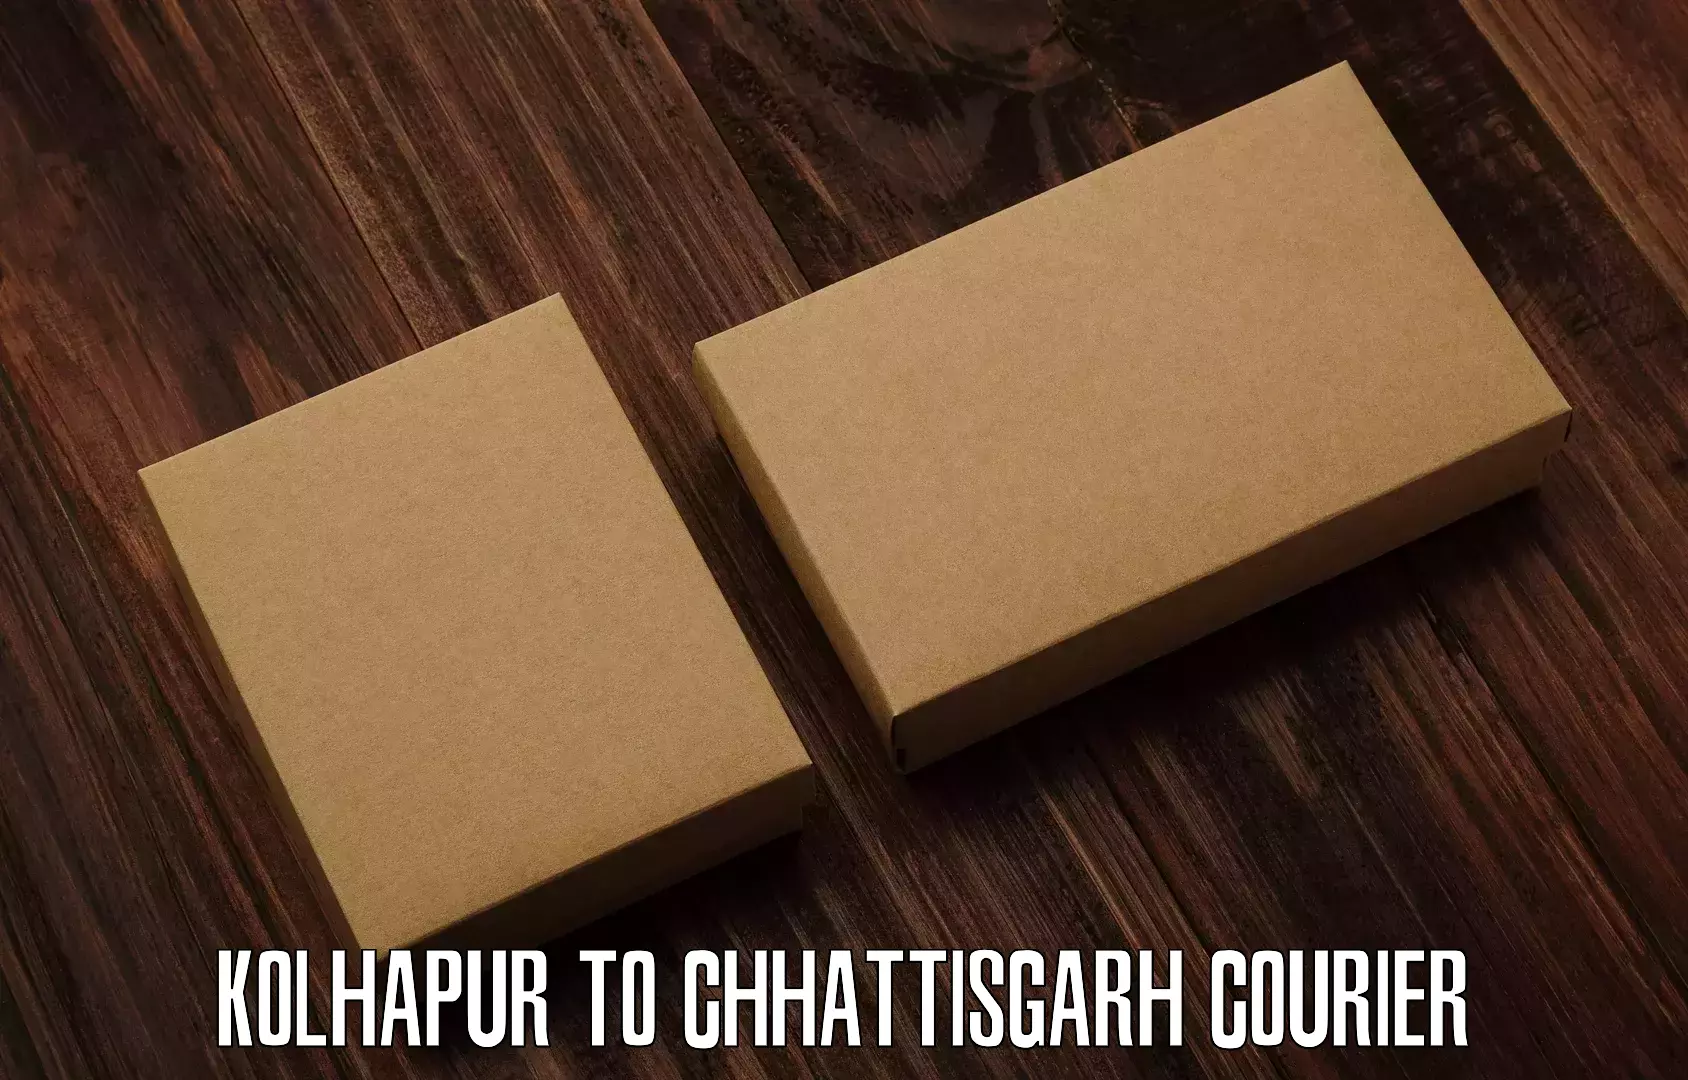 Flexible parcel services Kolhapur to Bastar